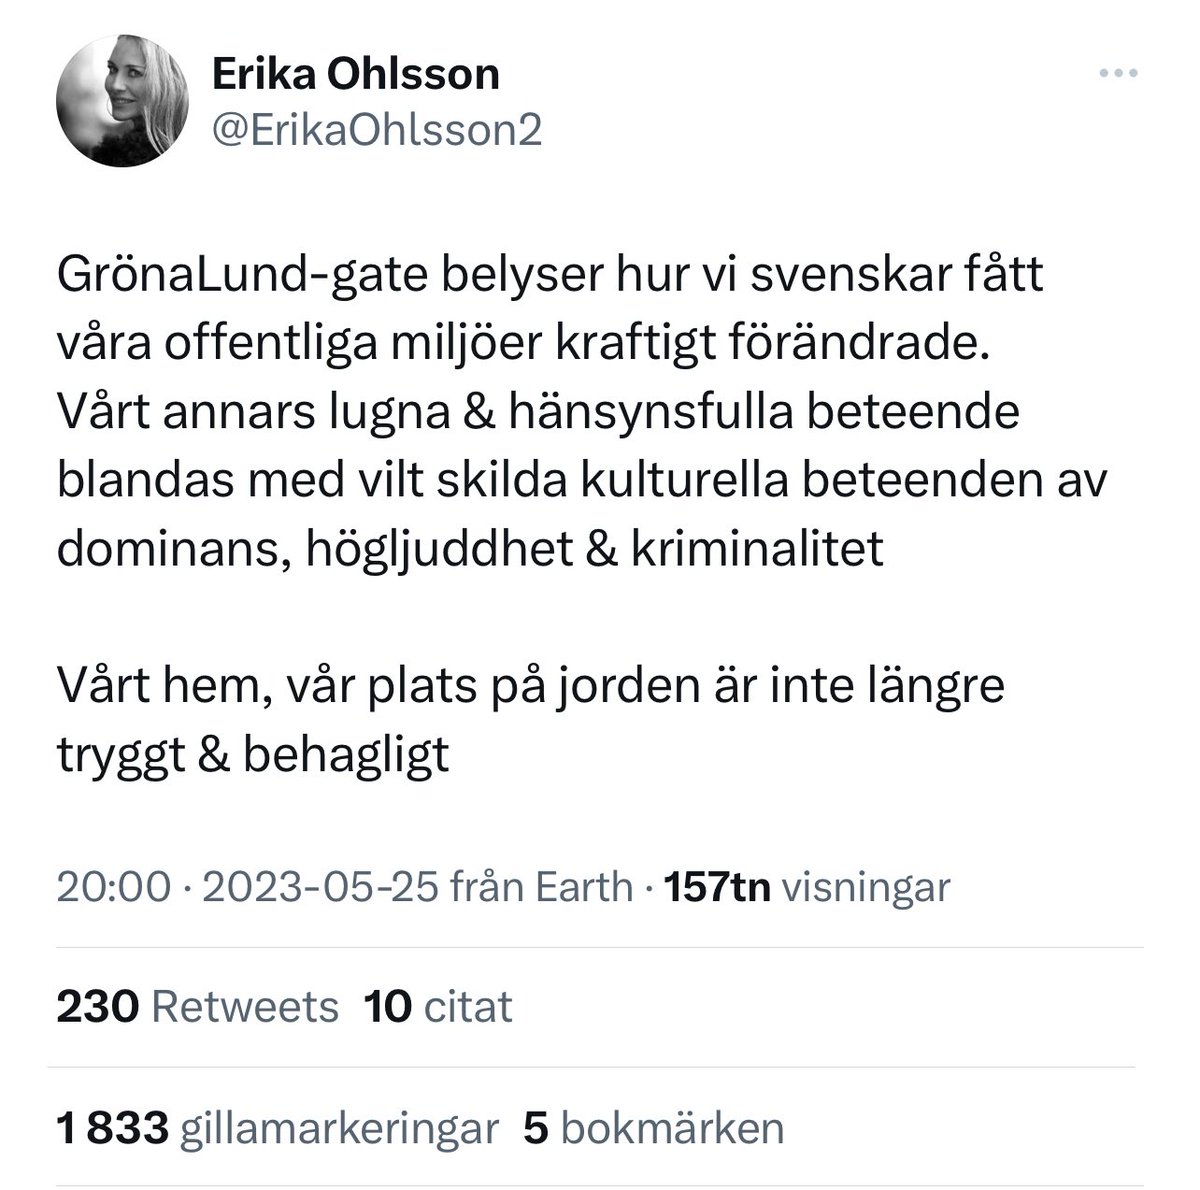 Ingen slump att Bulletinskribentens tweetande om Gröna Lund blev viralt. Det passar perfekt i narrativet om att degenererade invandrare tar vårt trygga Sverige ifrån skötsamma fina svenskar, samt att hårdare tag och återvandring är den enda lösningen.